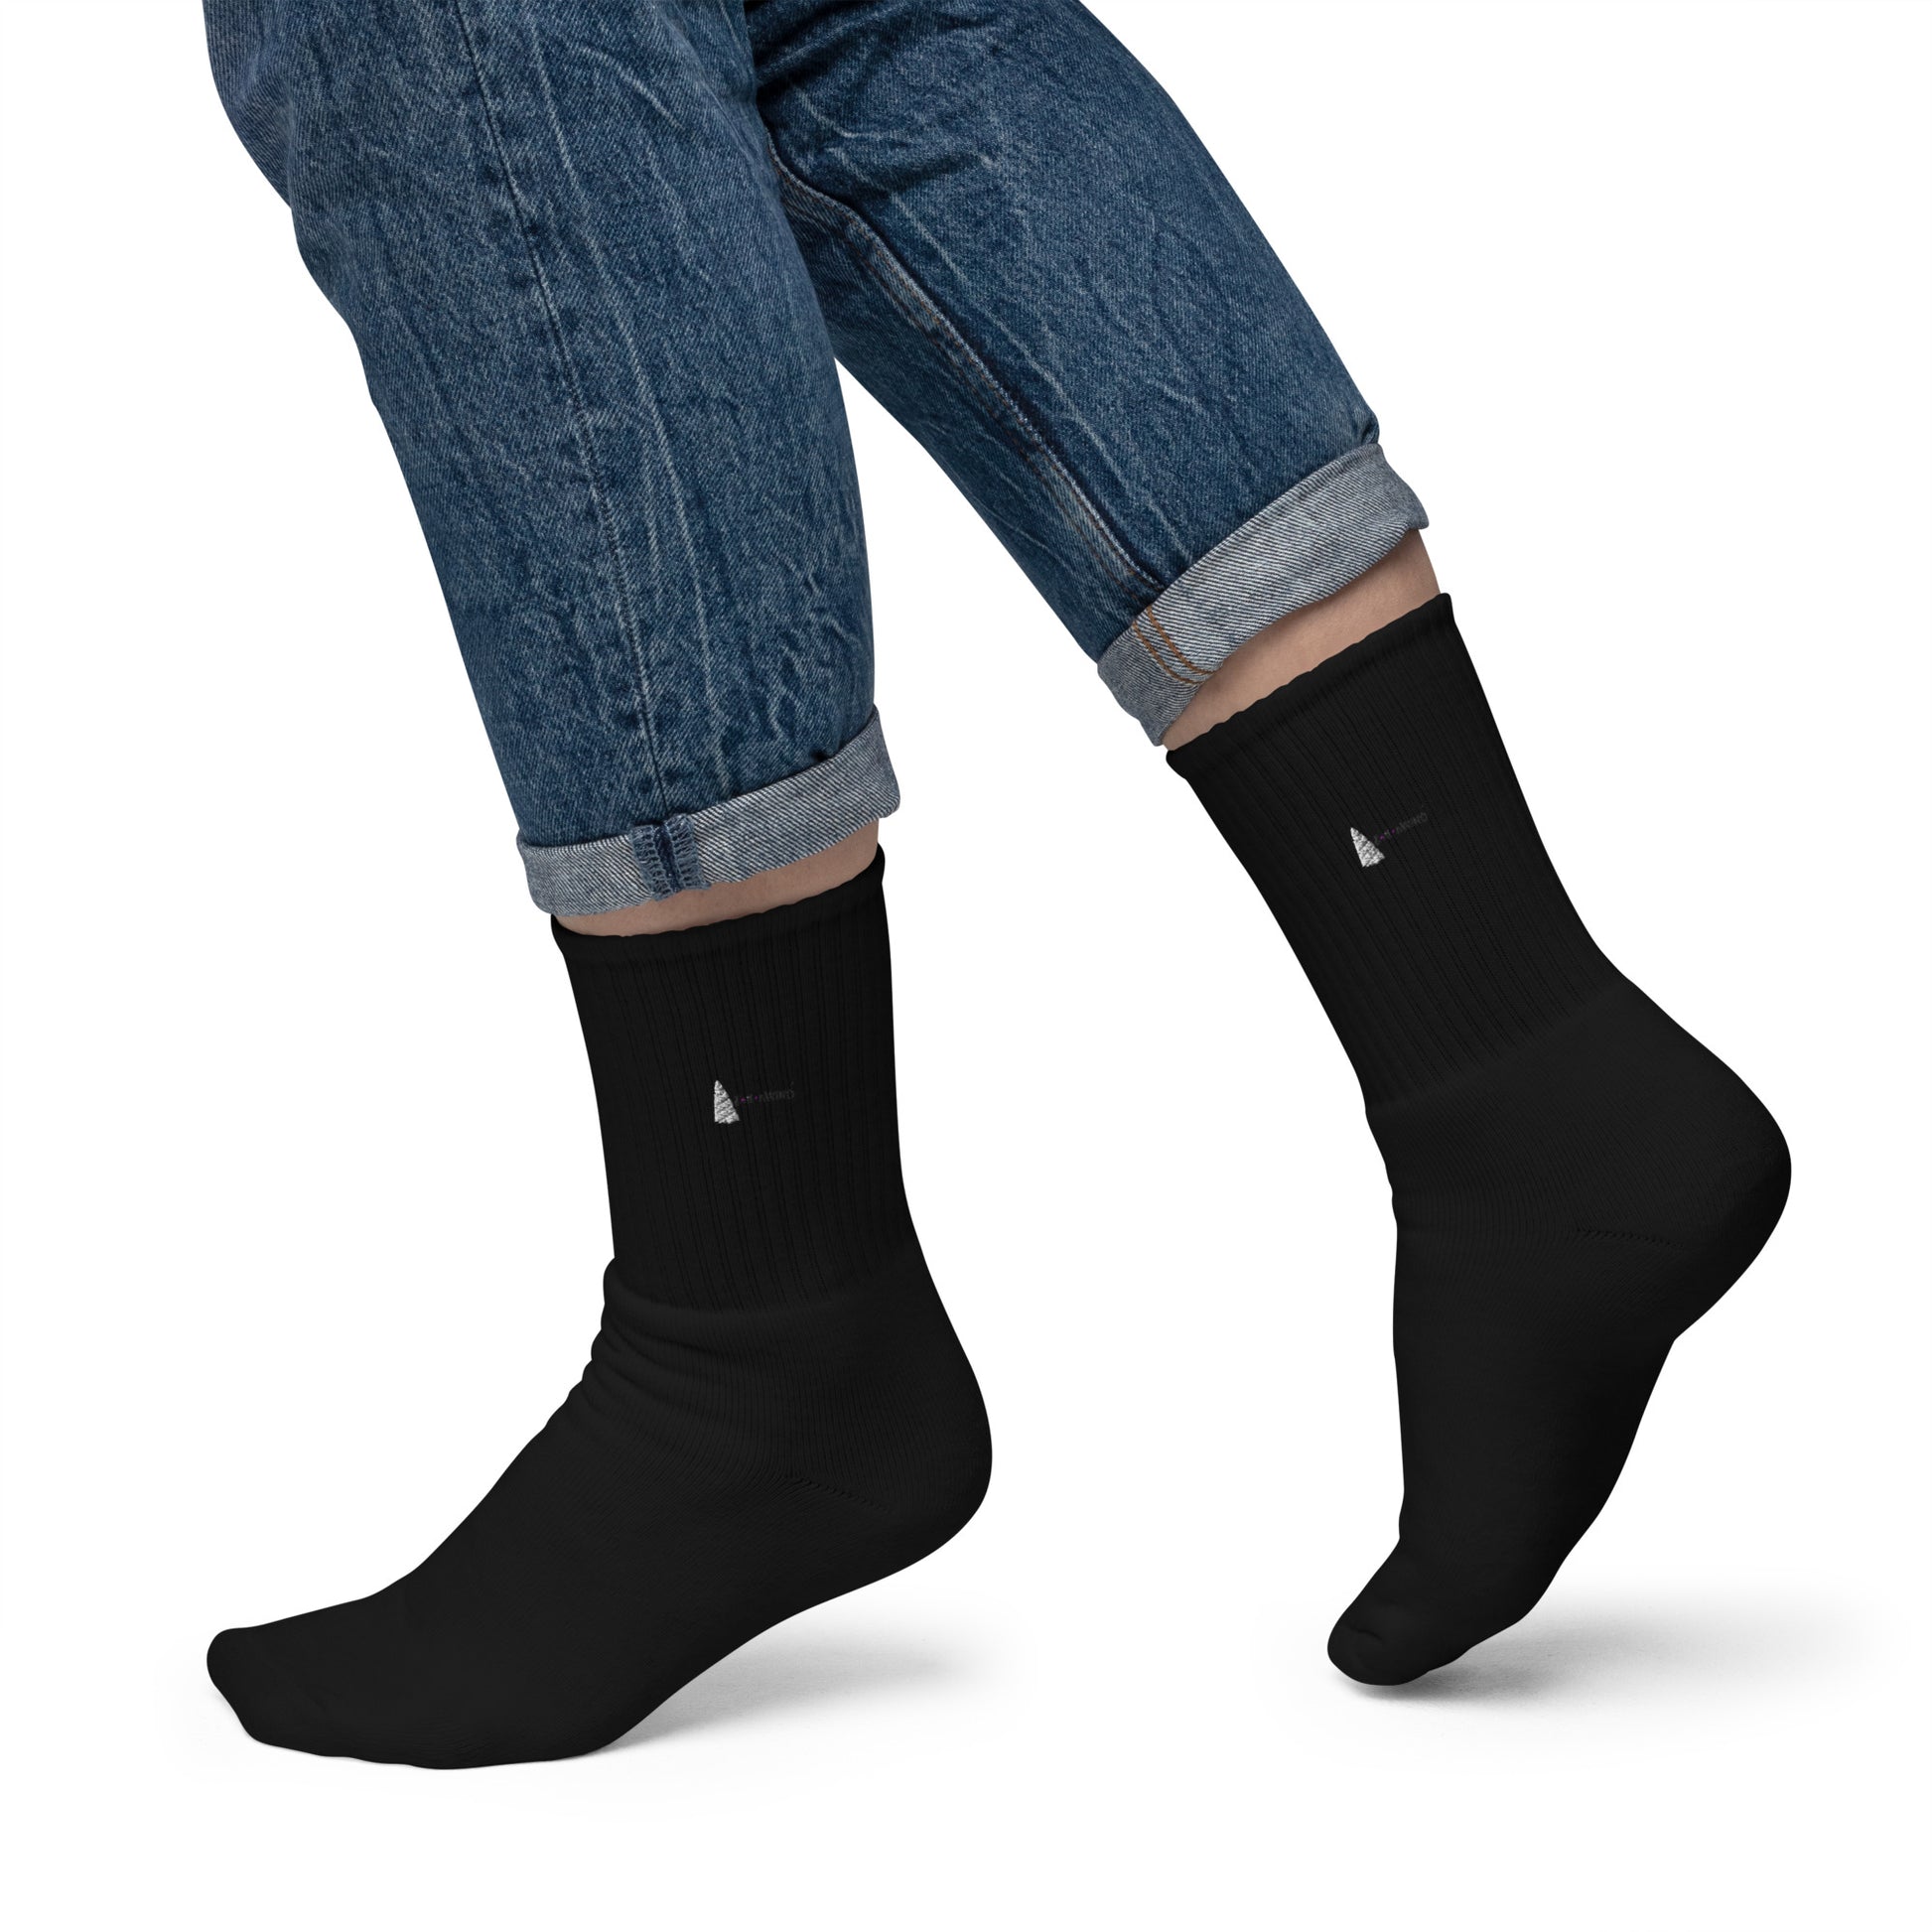 ZW Bestickte Socks Lady ANR:12004 ZeilenWind